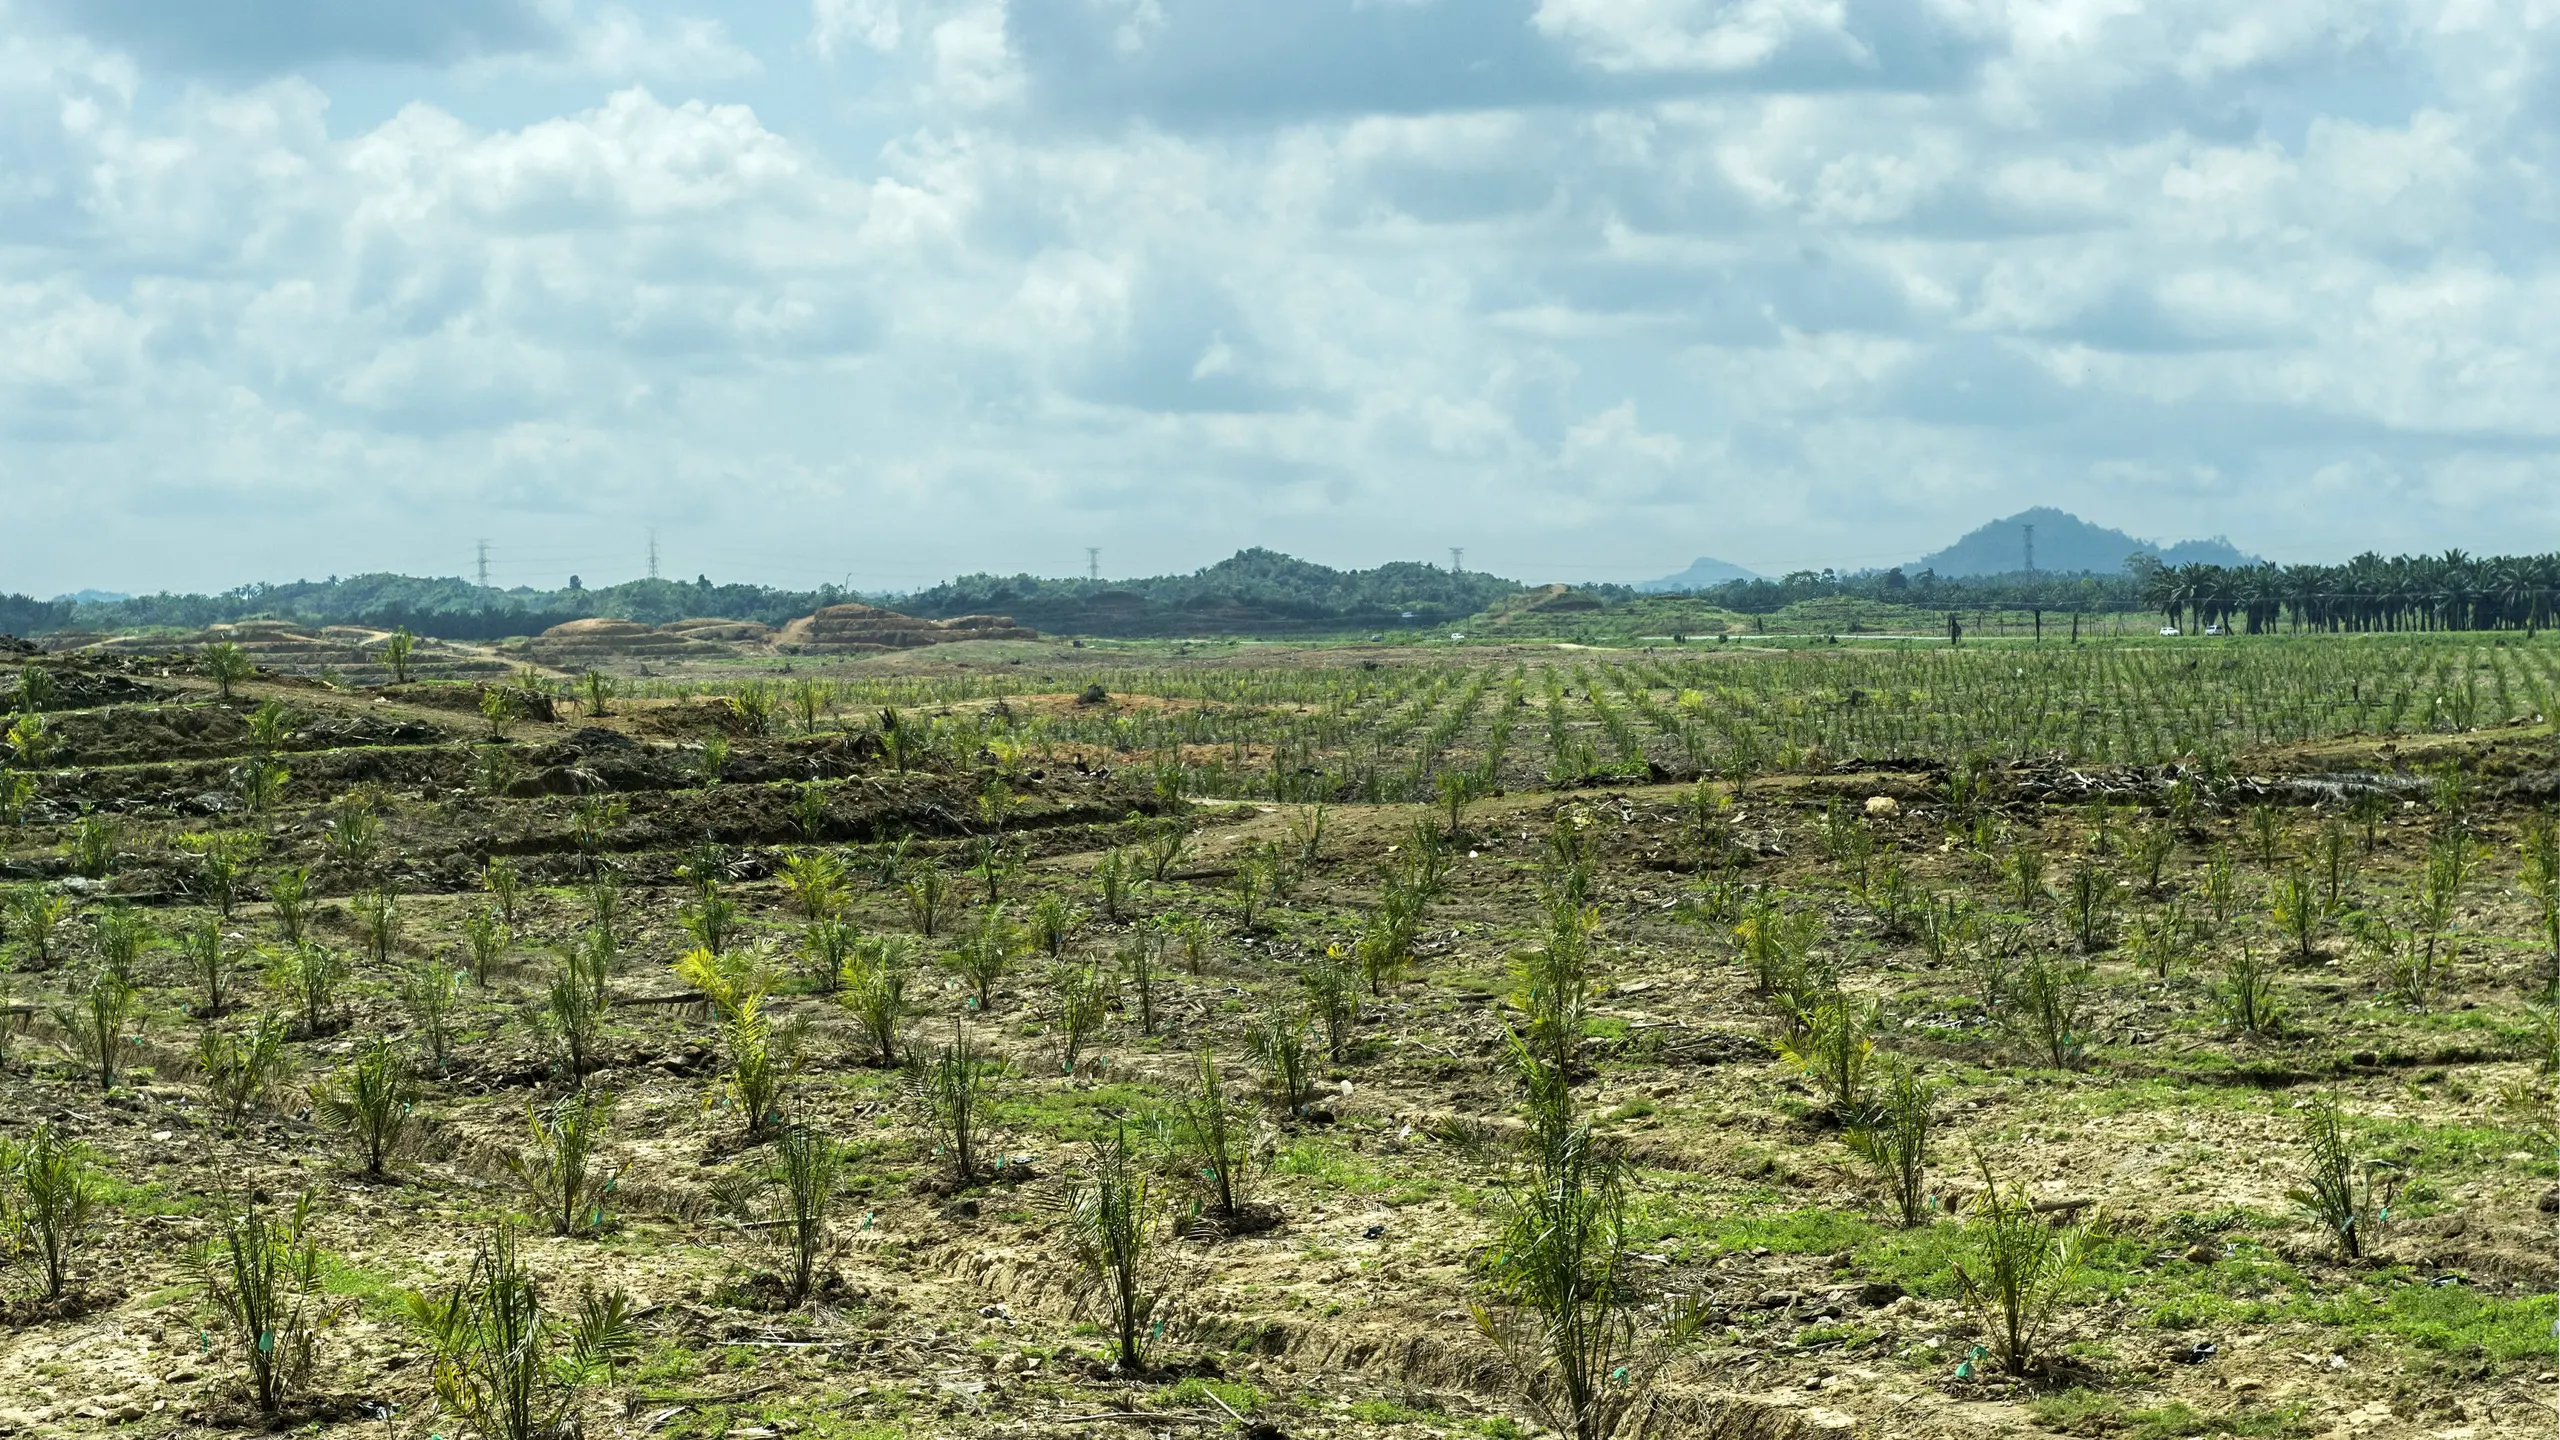 Palmöl Plantage mit jungen Ölpalmen (Elaeis guineensis) auf gerodeteten Regenwaldflächen, Sabah, Borneo, Malaysia